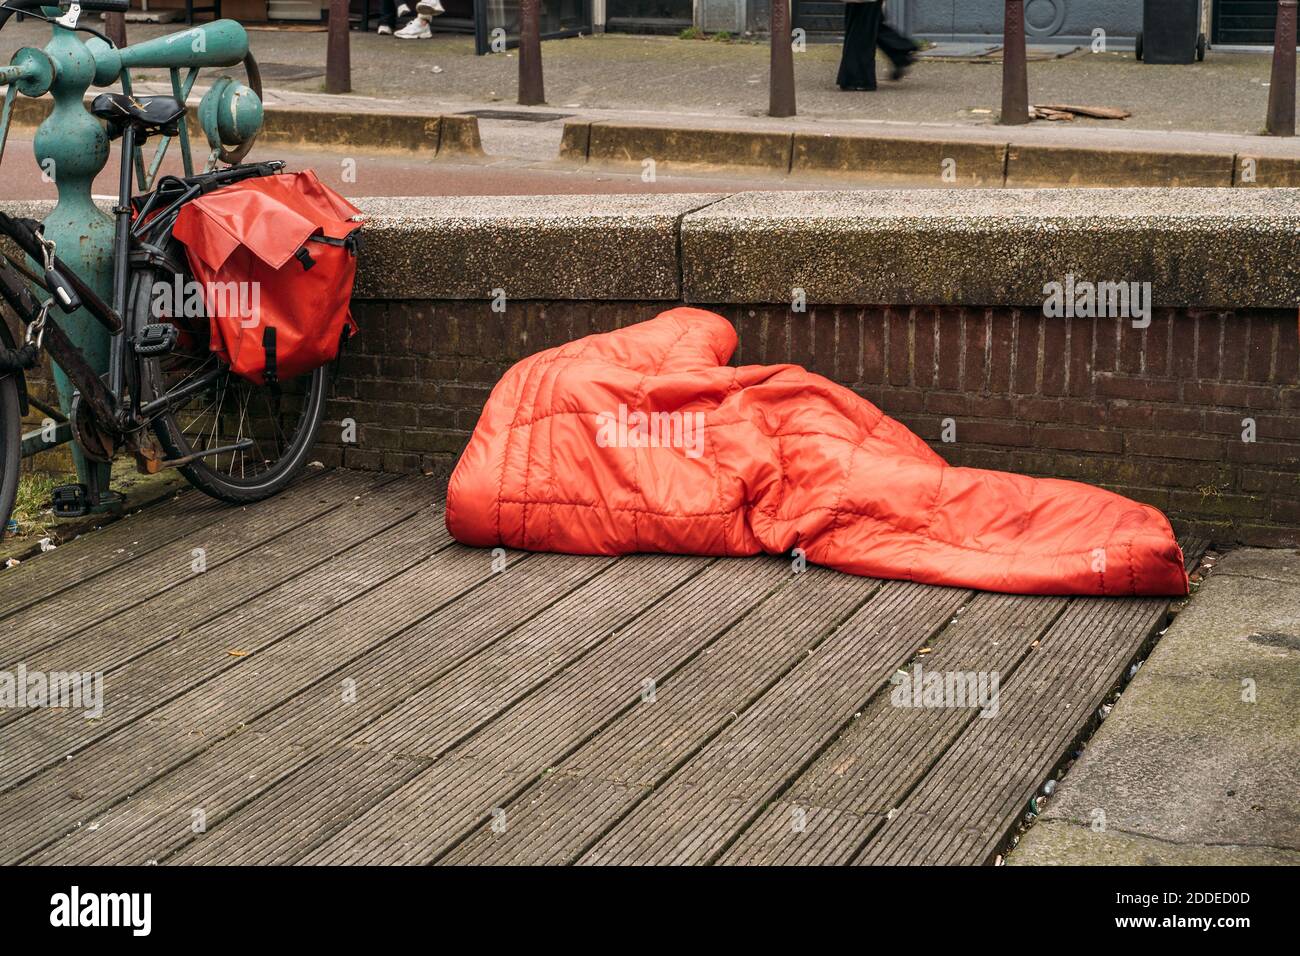 Homeless man sleeps under red blanket in center of European city. Stock Photo